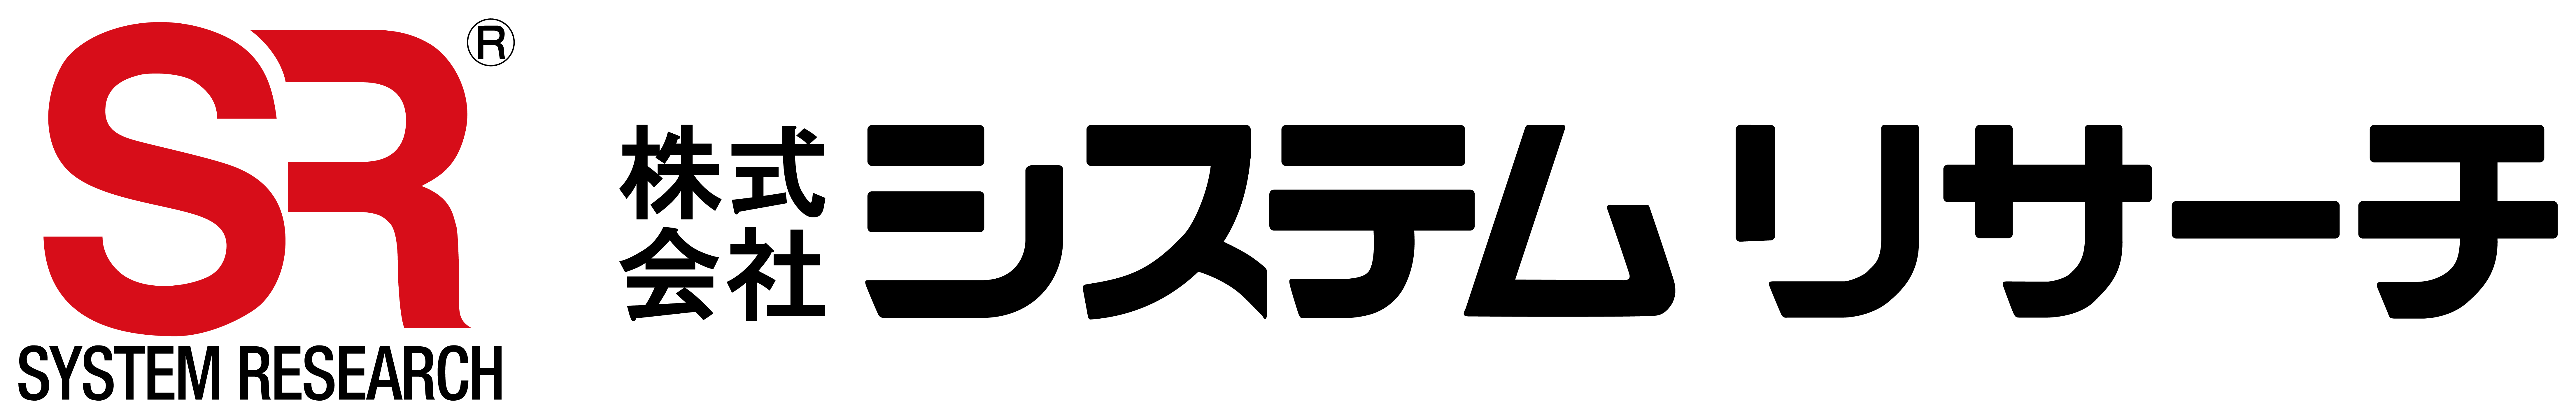 システムリサーチ社のロゴ